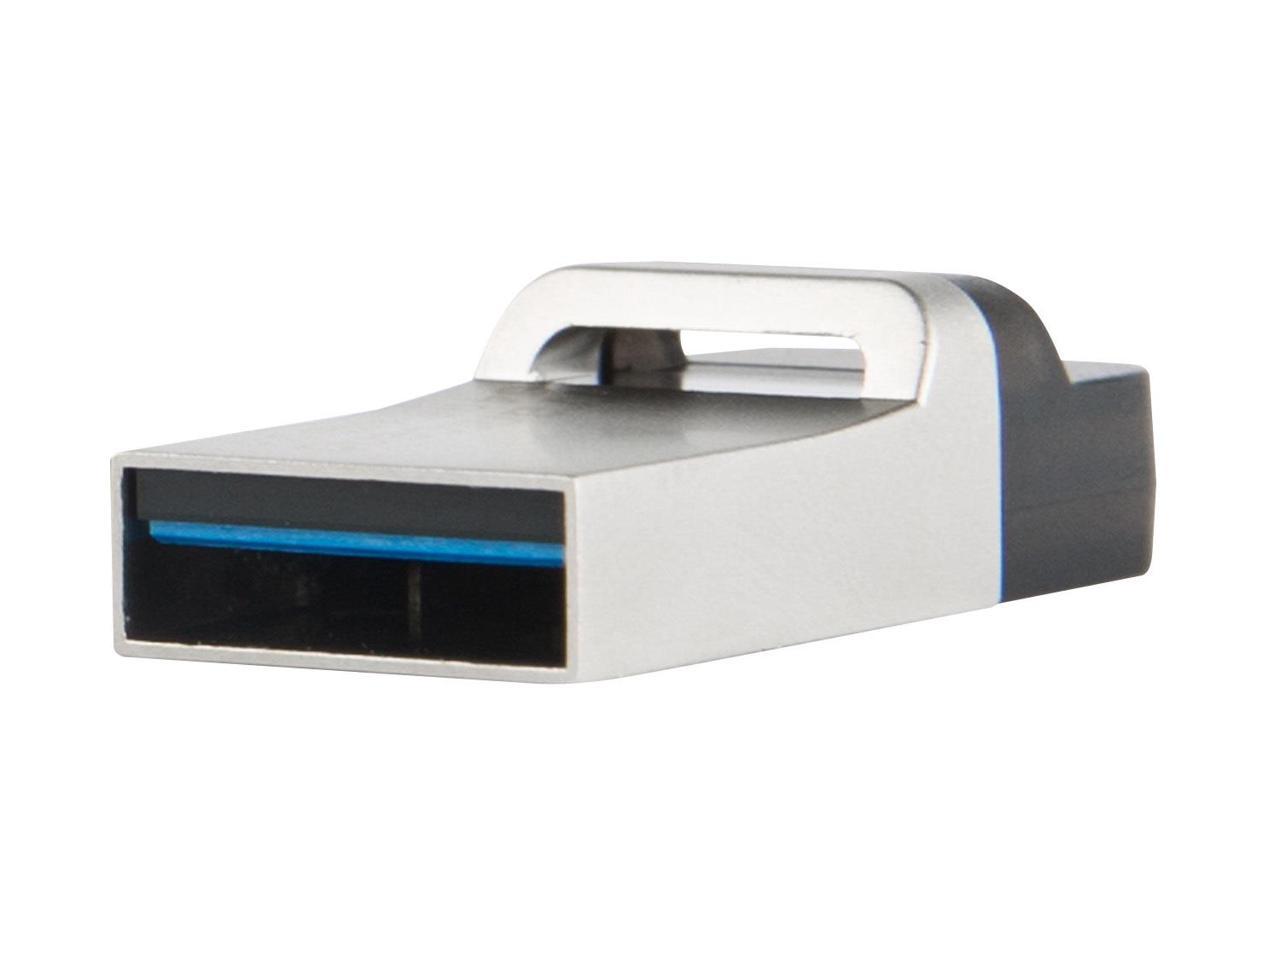 16GB Transcend Jetflash 880S OTG USB3.0 Flash Drive - Silver Edition